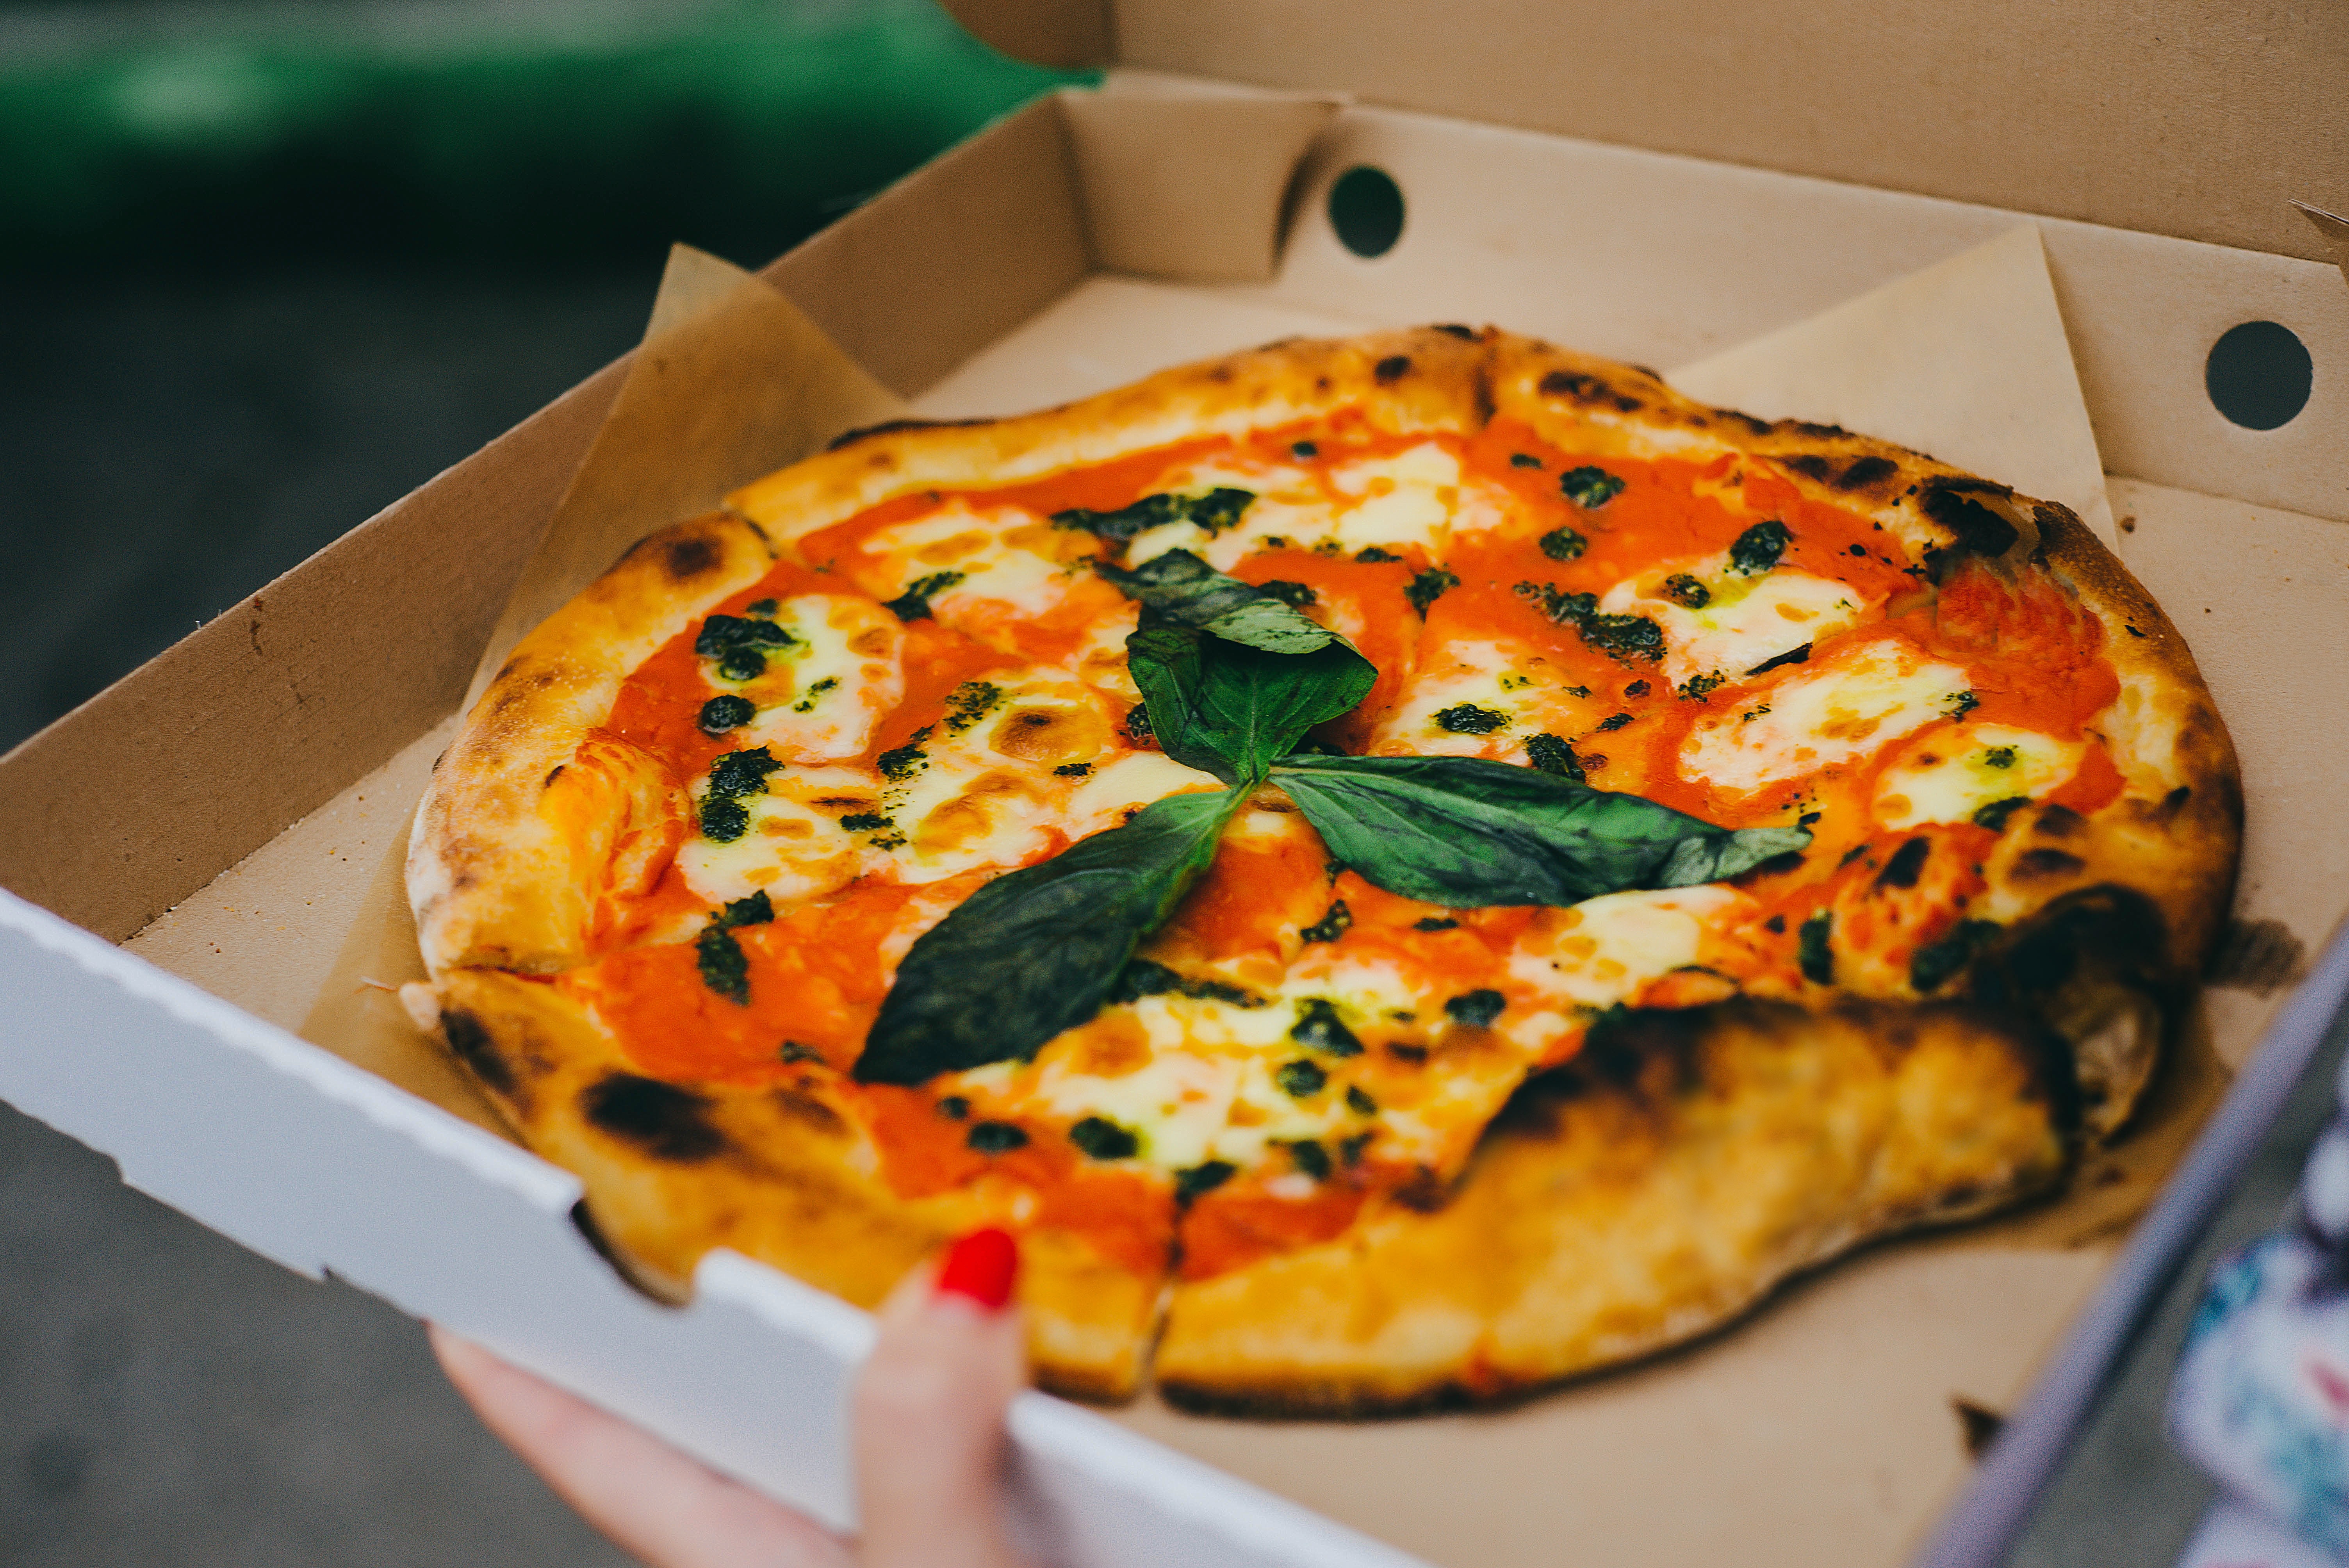 Pizza a domicilio: Alessandria al settimo posto per numero di ordini su Deliveroo